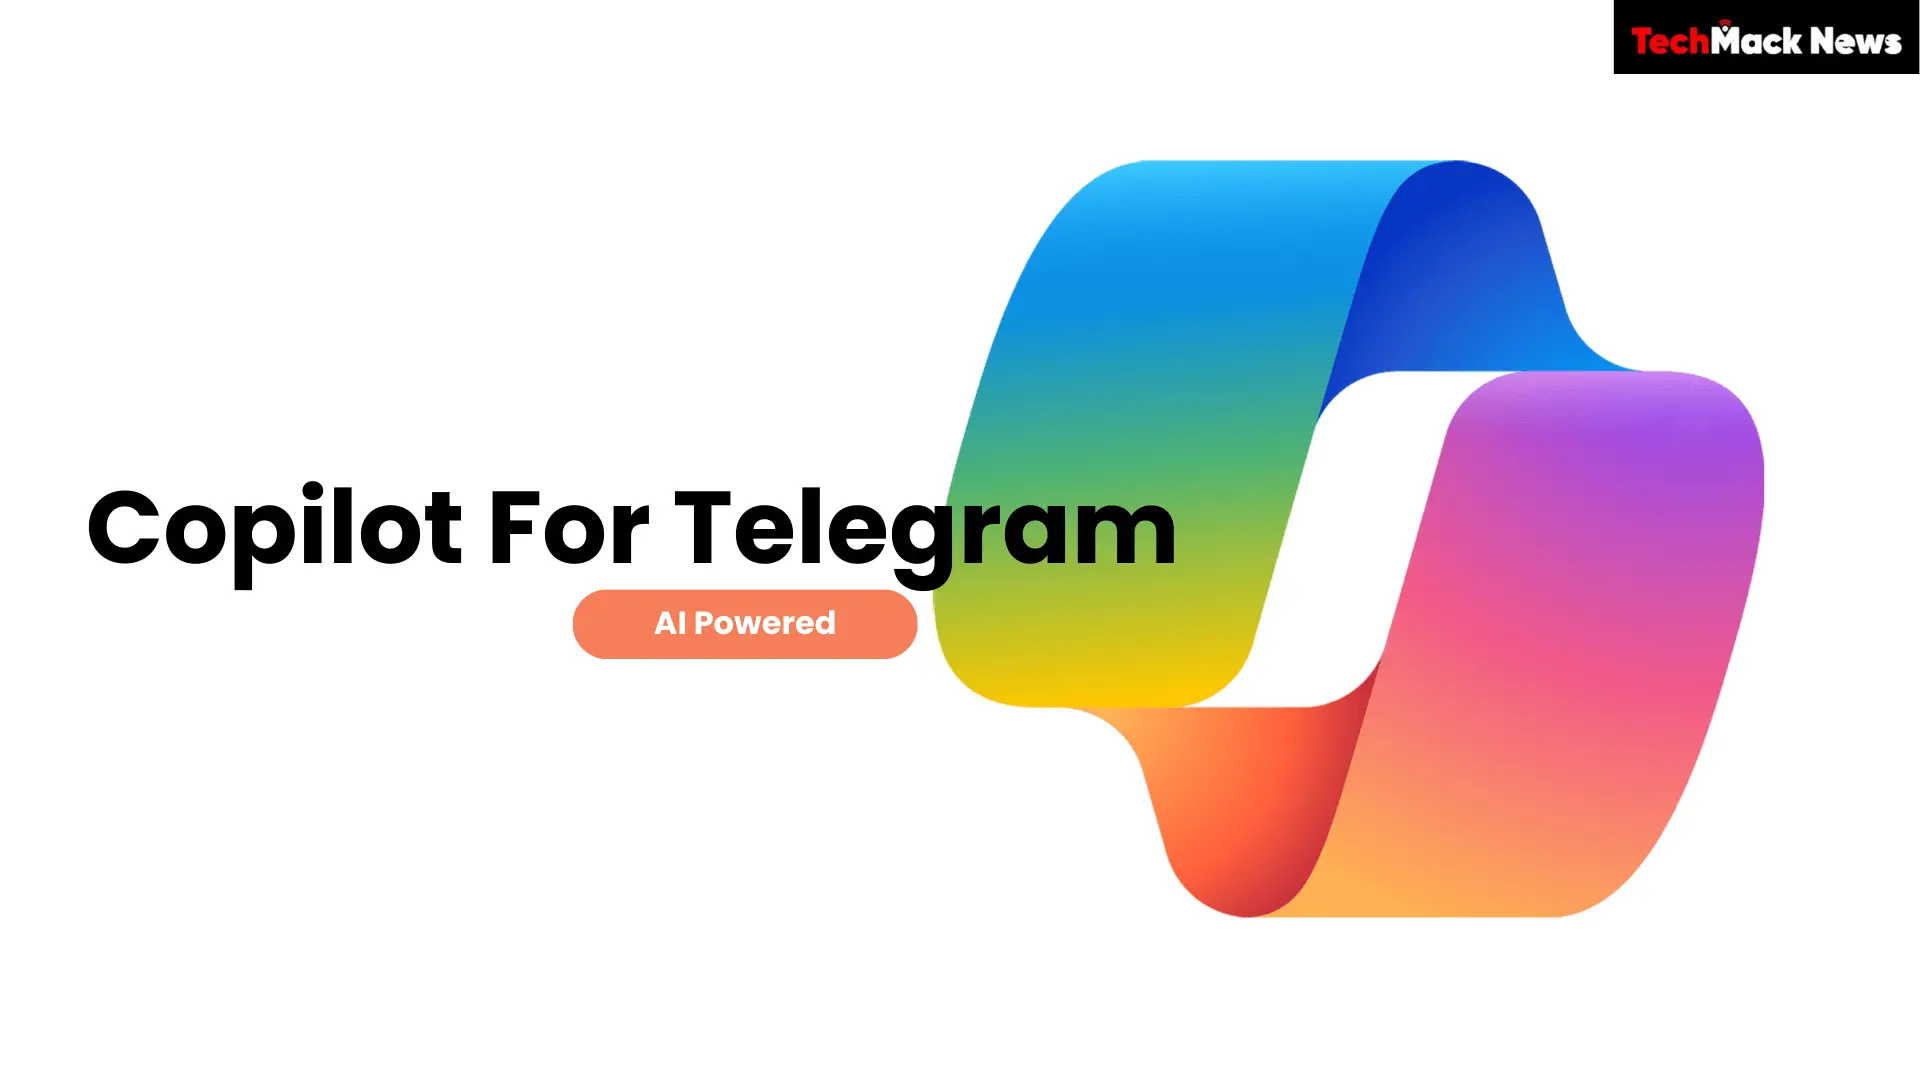 Copilot For Telegram